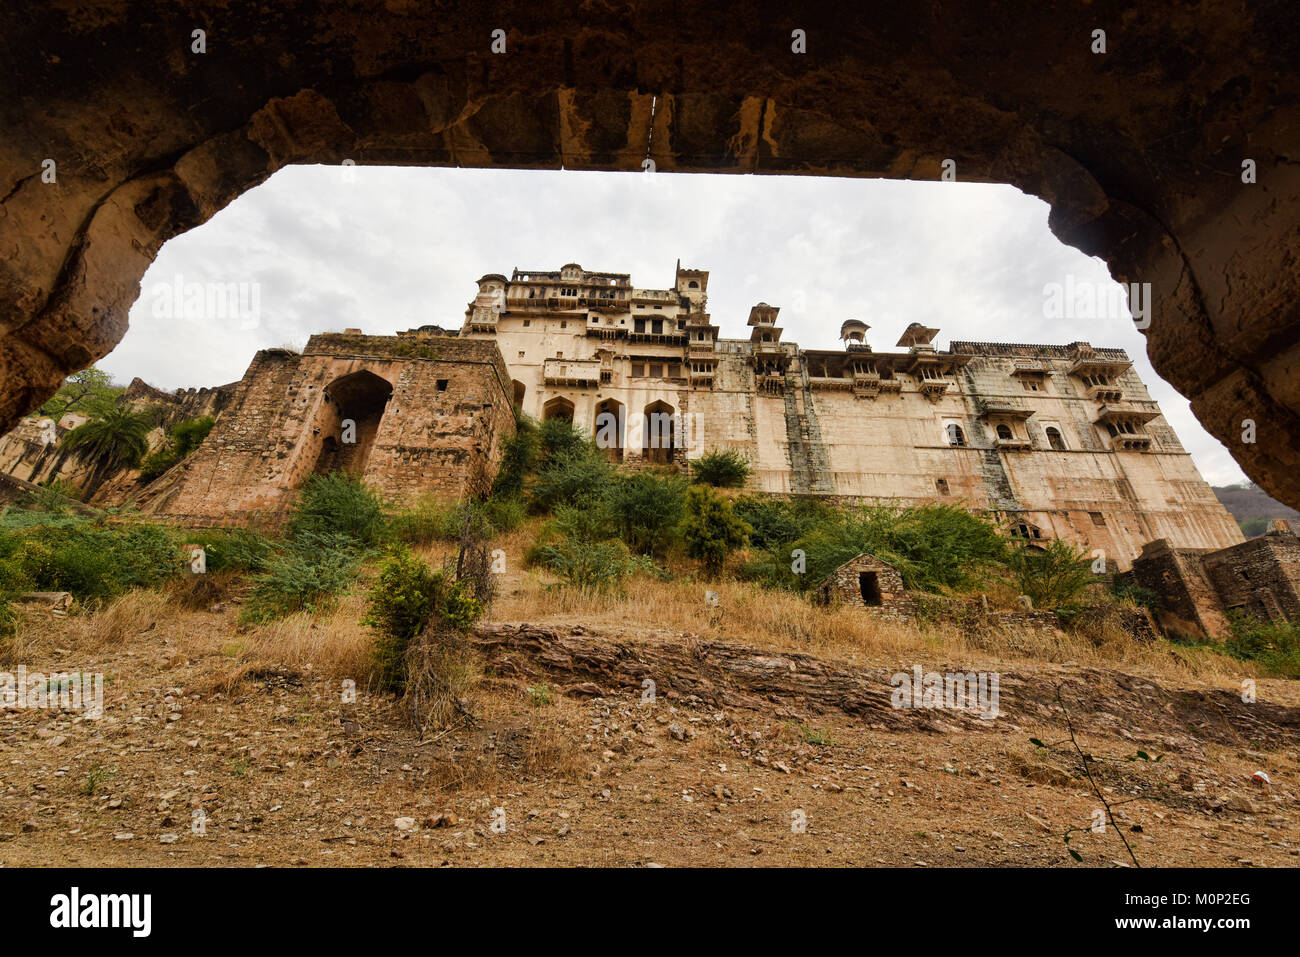 The atmospheric ruined Bundi Palace, Rajasthan, India Stock Photo